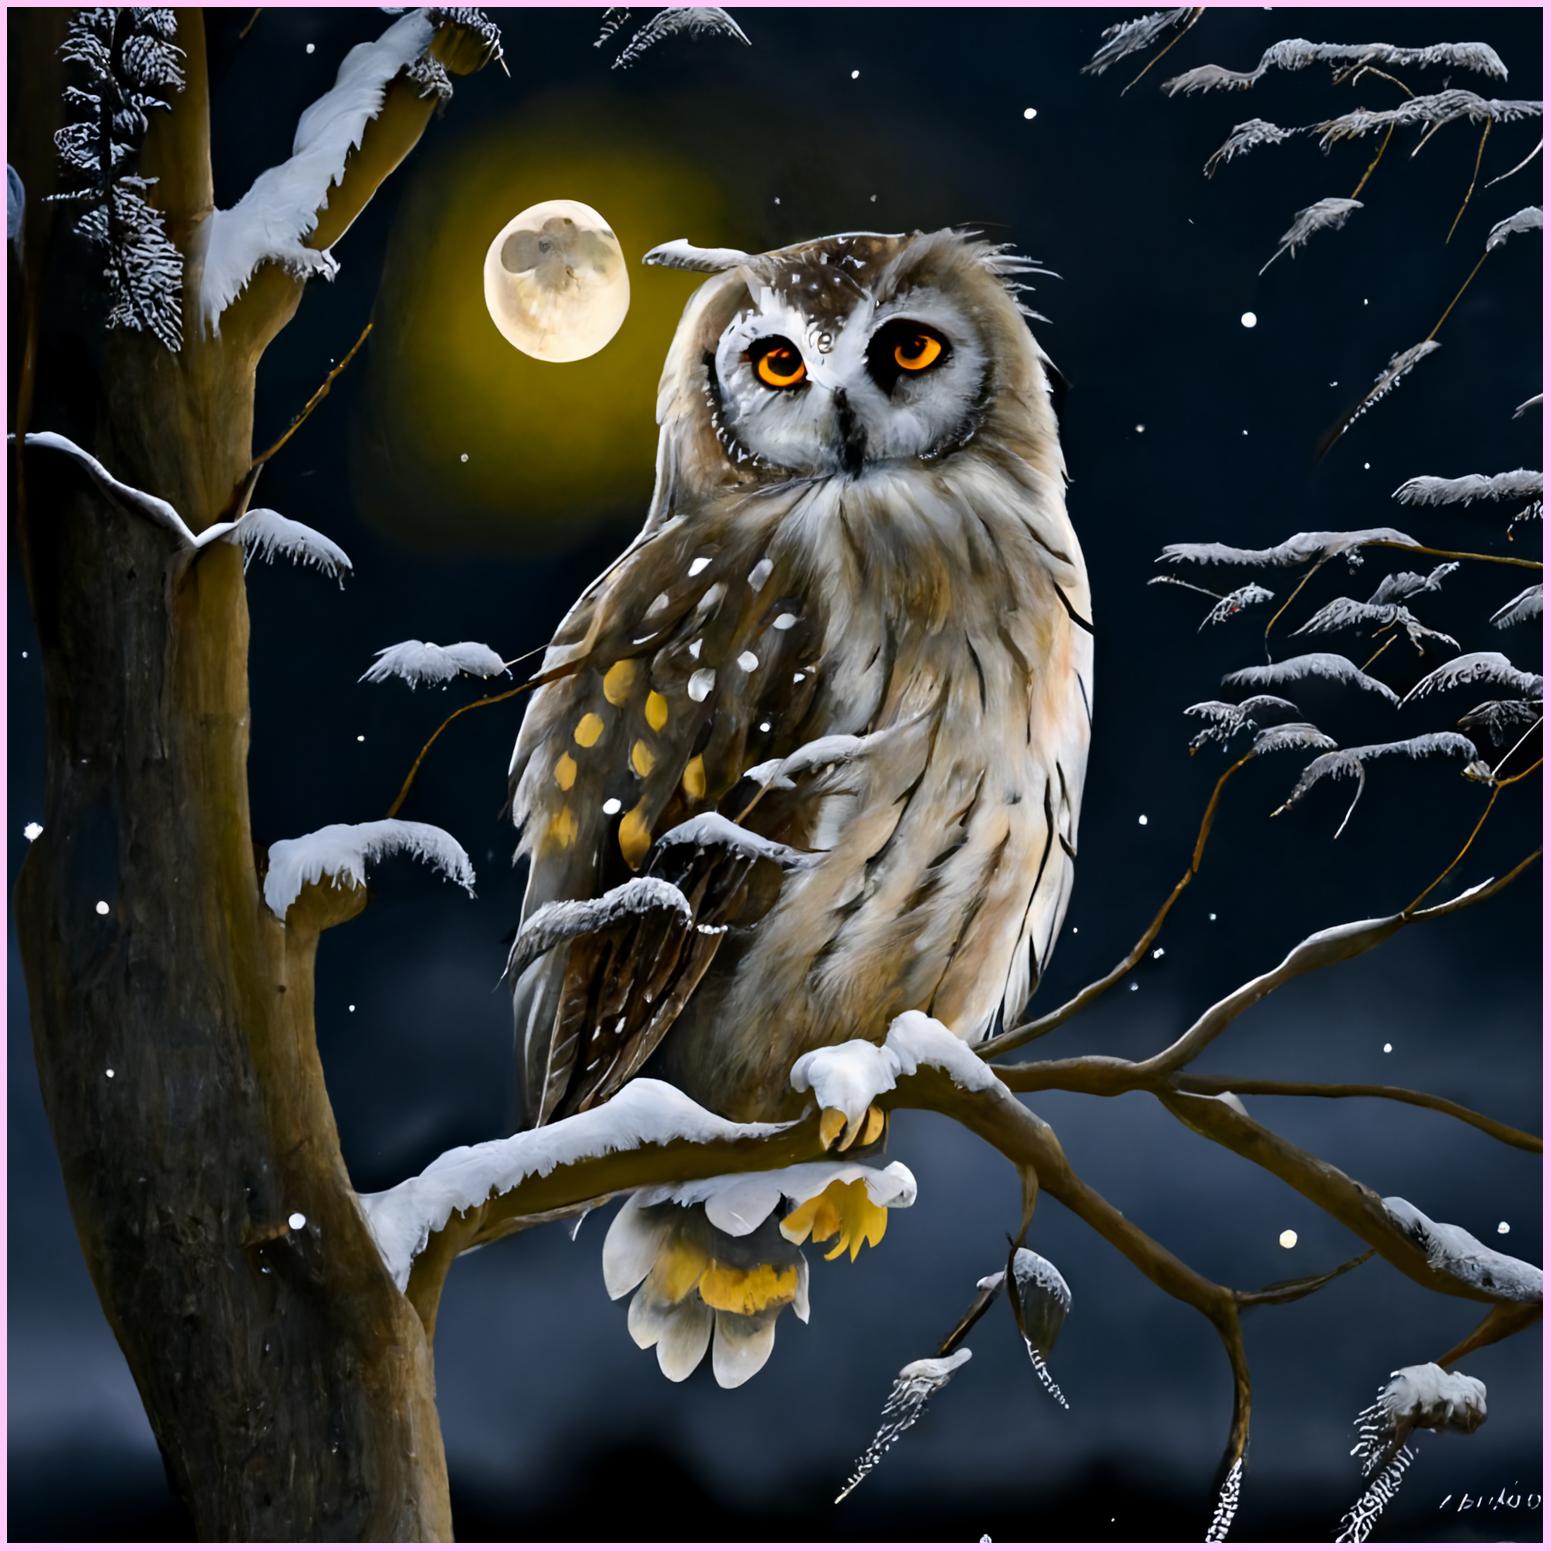 Mandala Owl Beautiful Diamond Painting Owl - FridayStuff